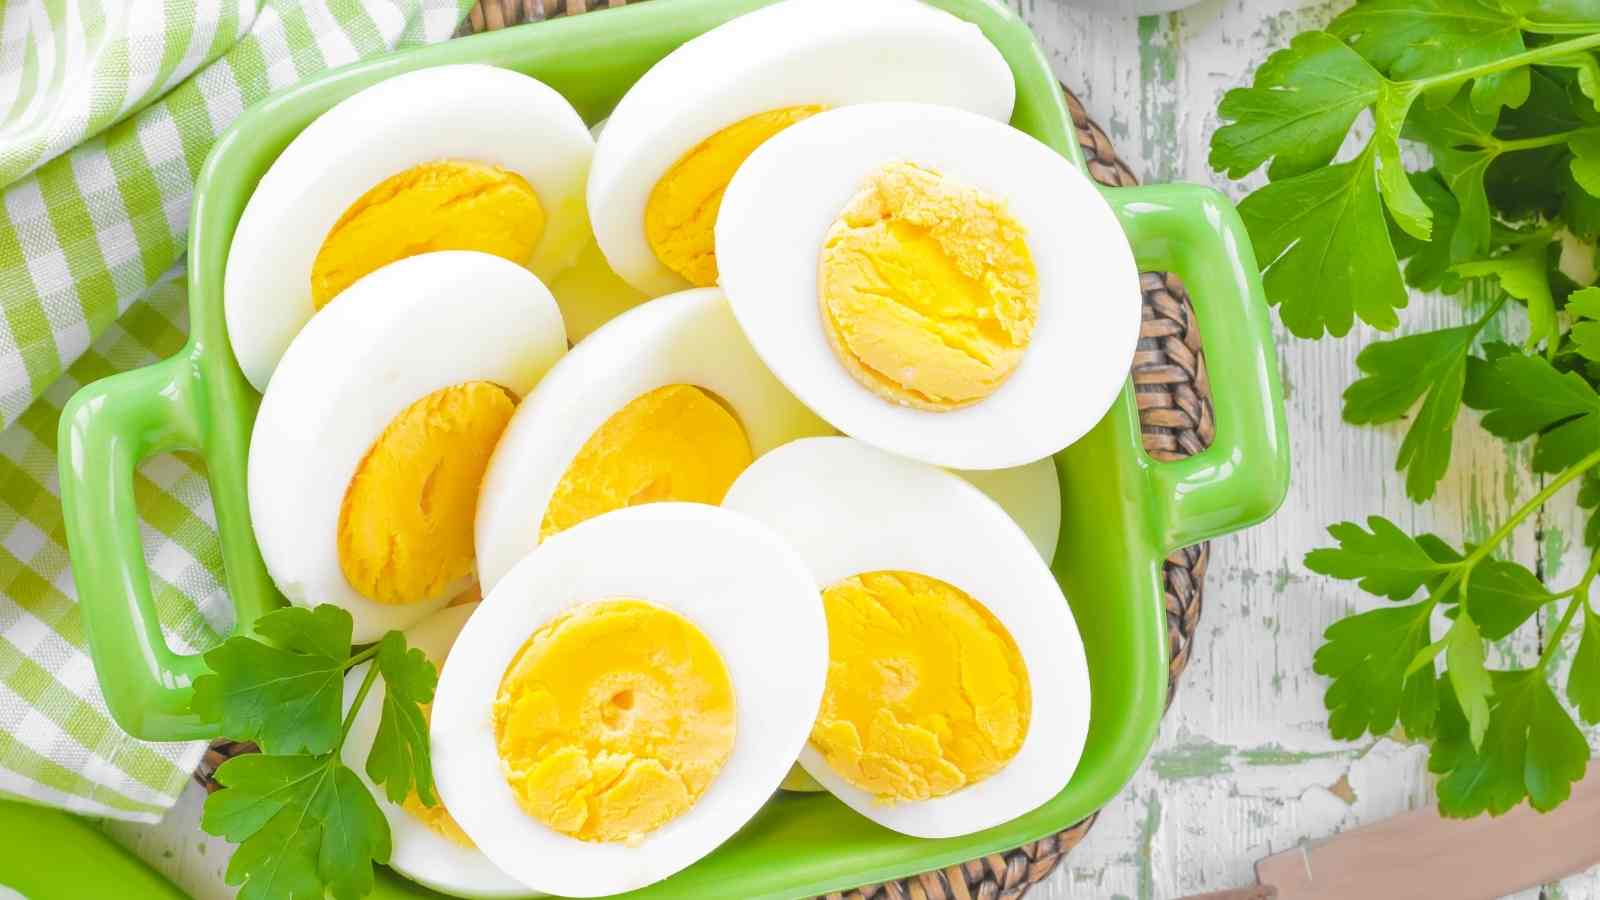 https://tipbuzz.com/wp-content/uploads/Hard-boiled-eggs-in-basket.jpg